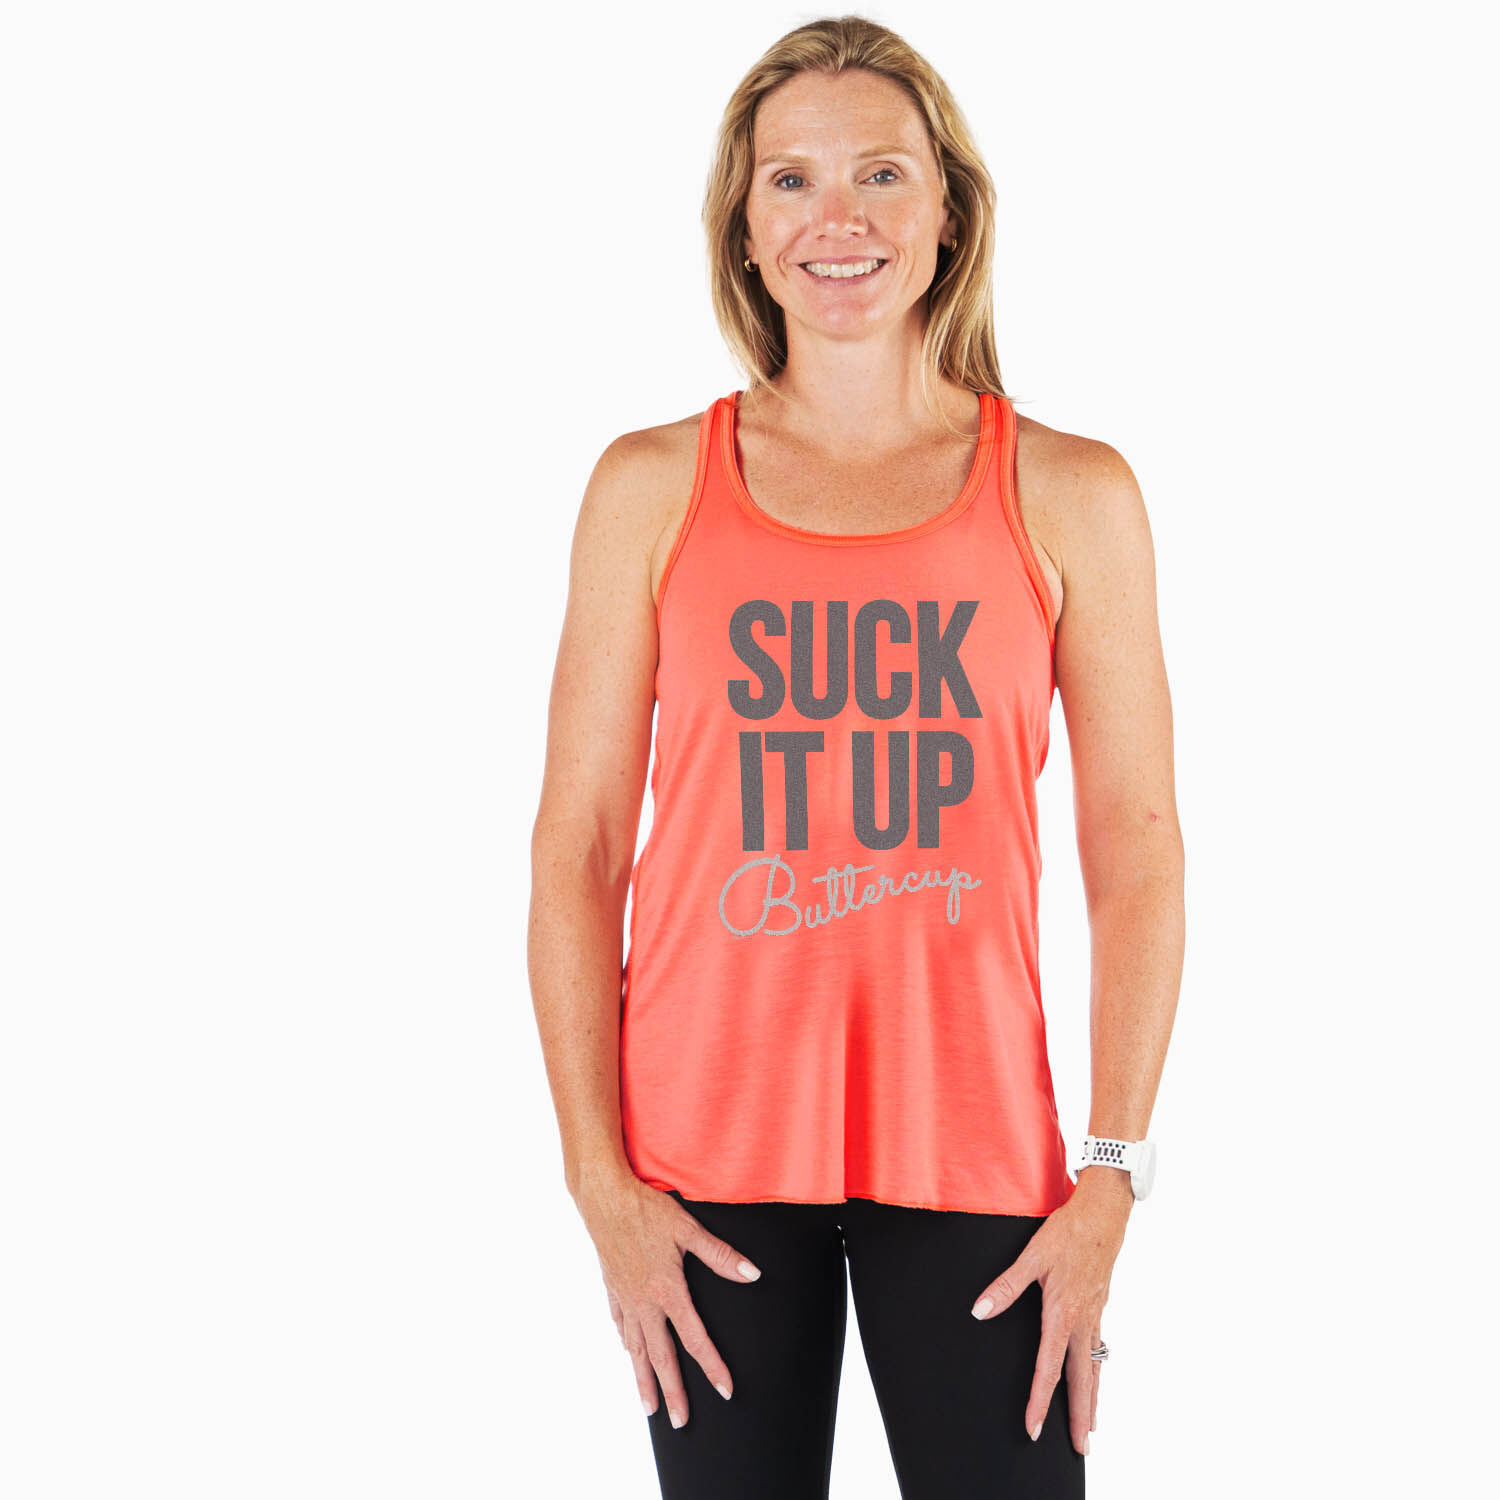 Winsummer Suck up Buttercup Workout Tank Tops Women Flowy Racerback Gym Running Tanks Shirts Sleeveless T-Shirt Vest 